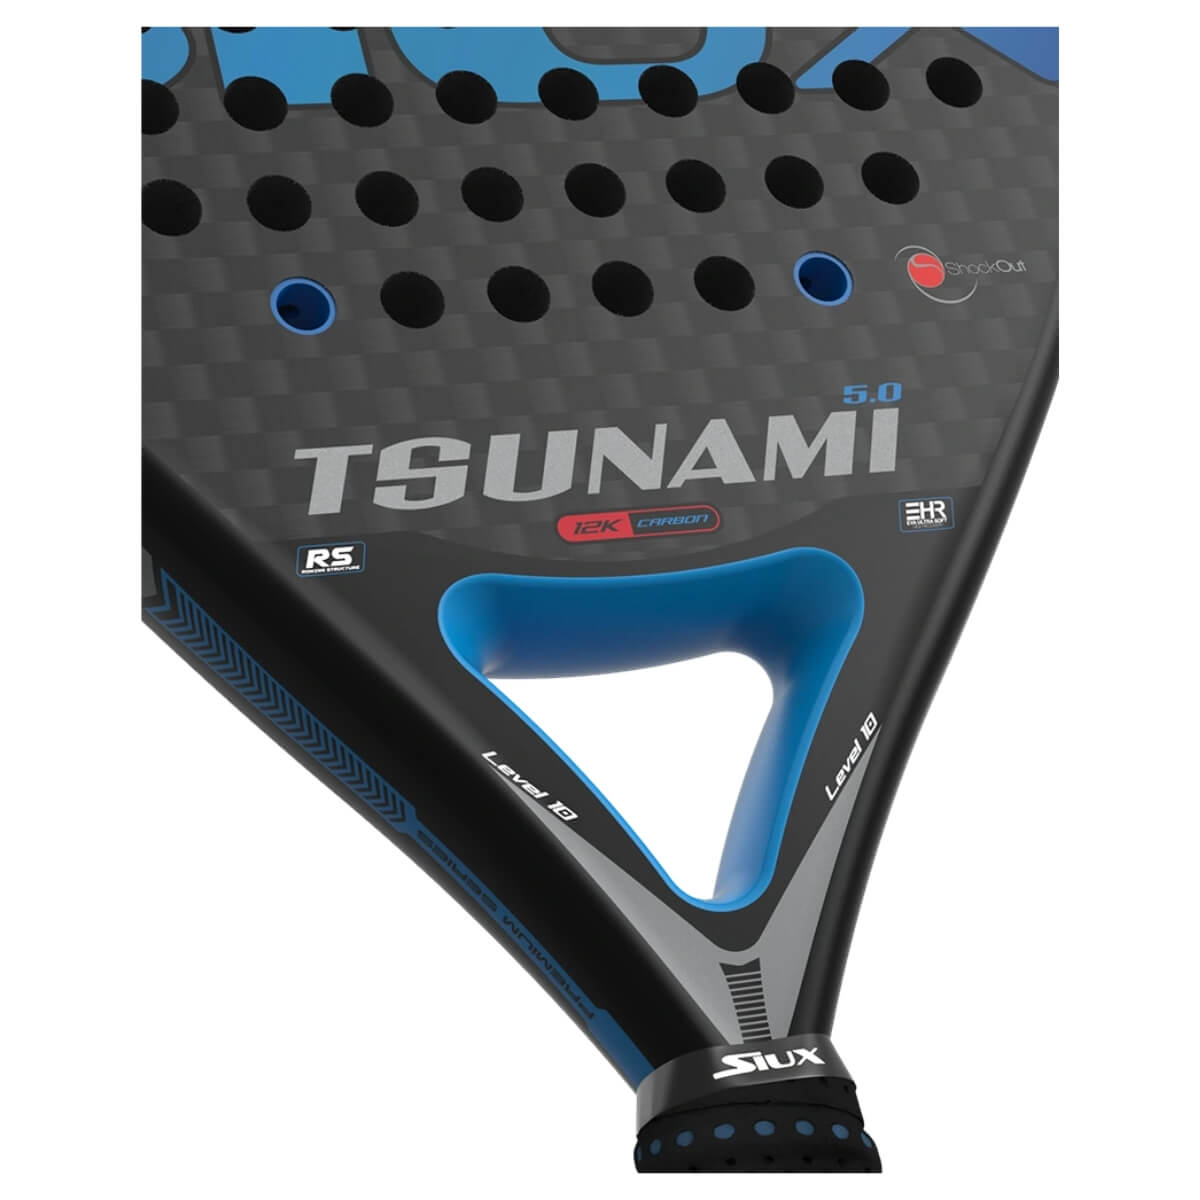 Siux Tsunami 5.0 12k padel racket close-up 2